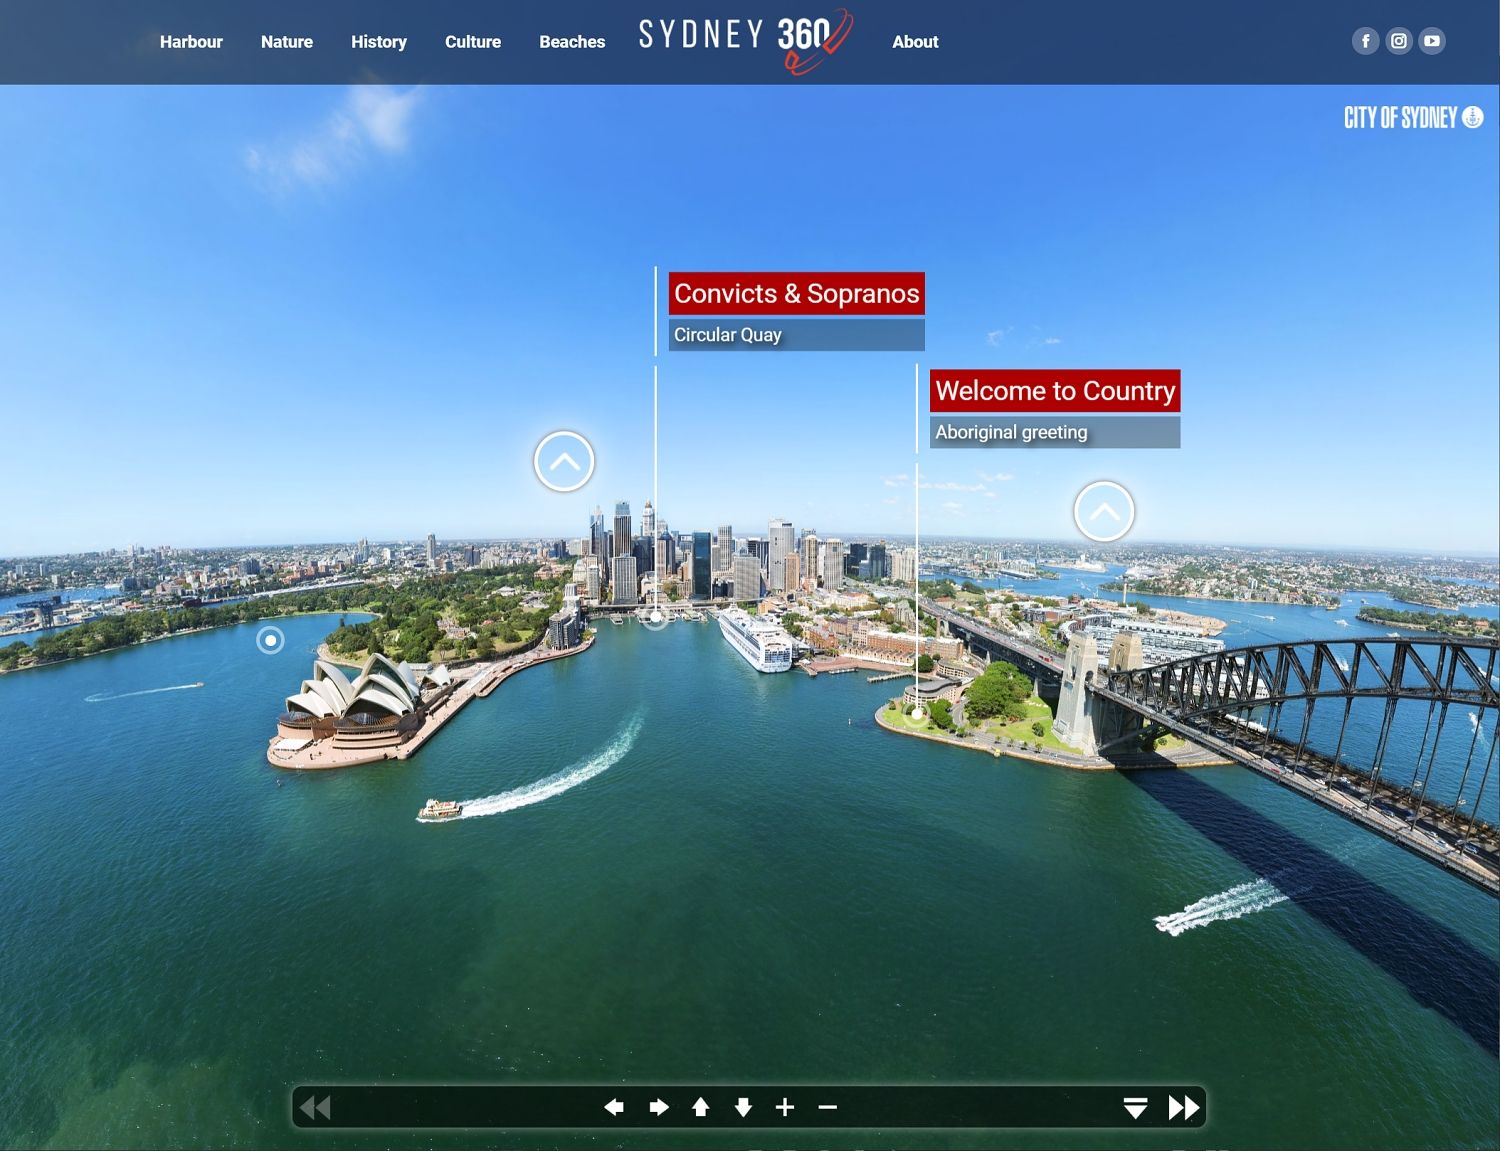 Sydney 360 - A New Prespective